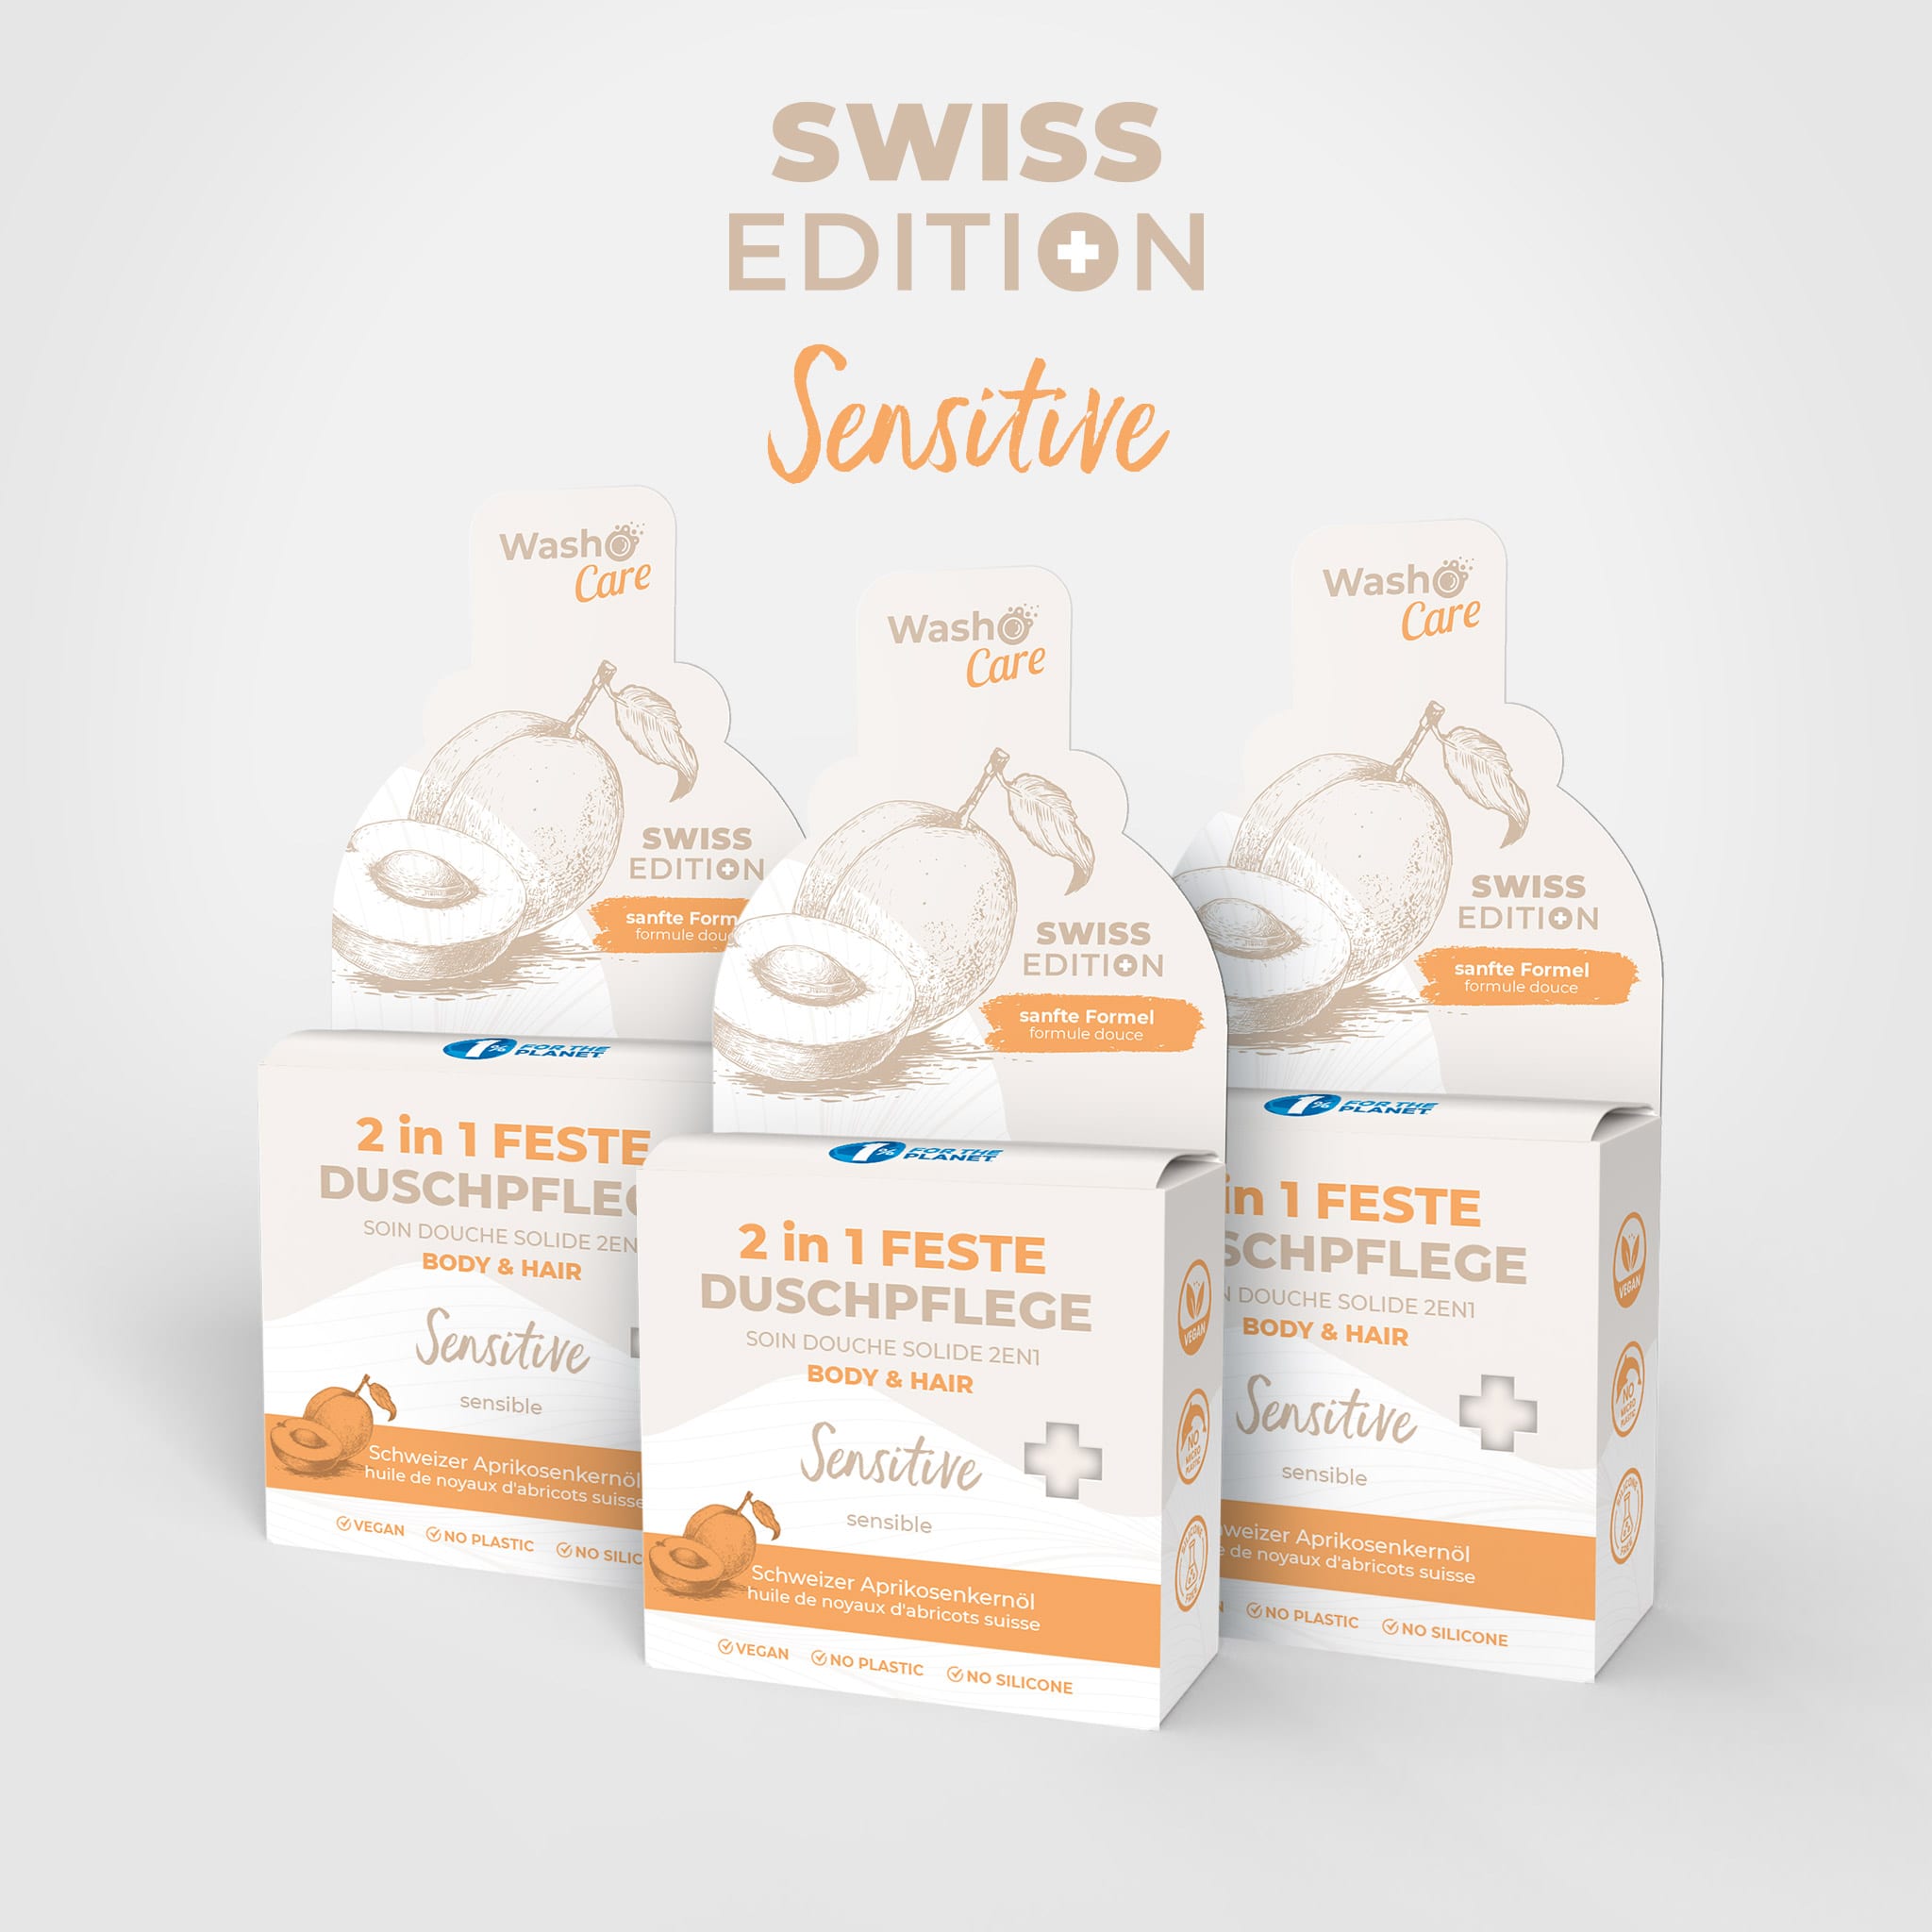 3 Washo Care Swiss Edition 2in1 Corpo e Capelli Sensitive